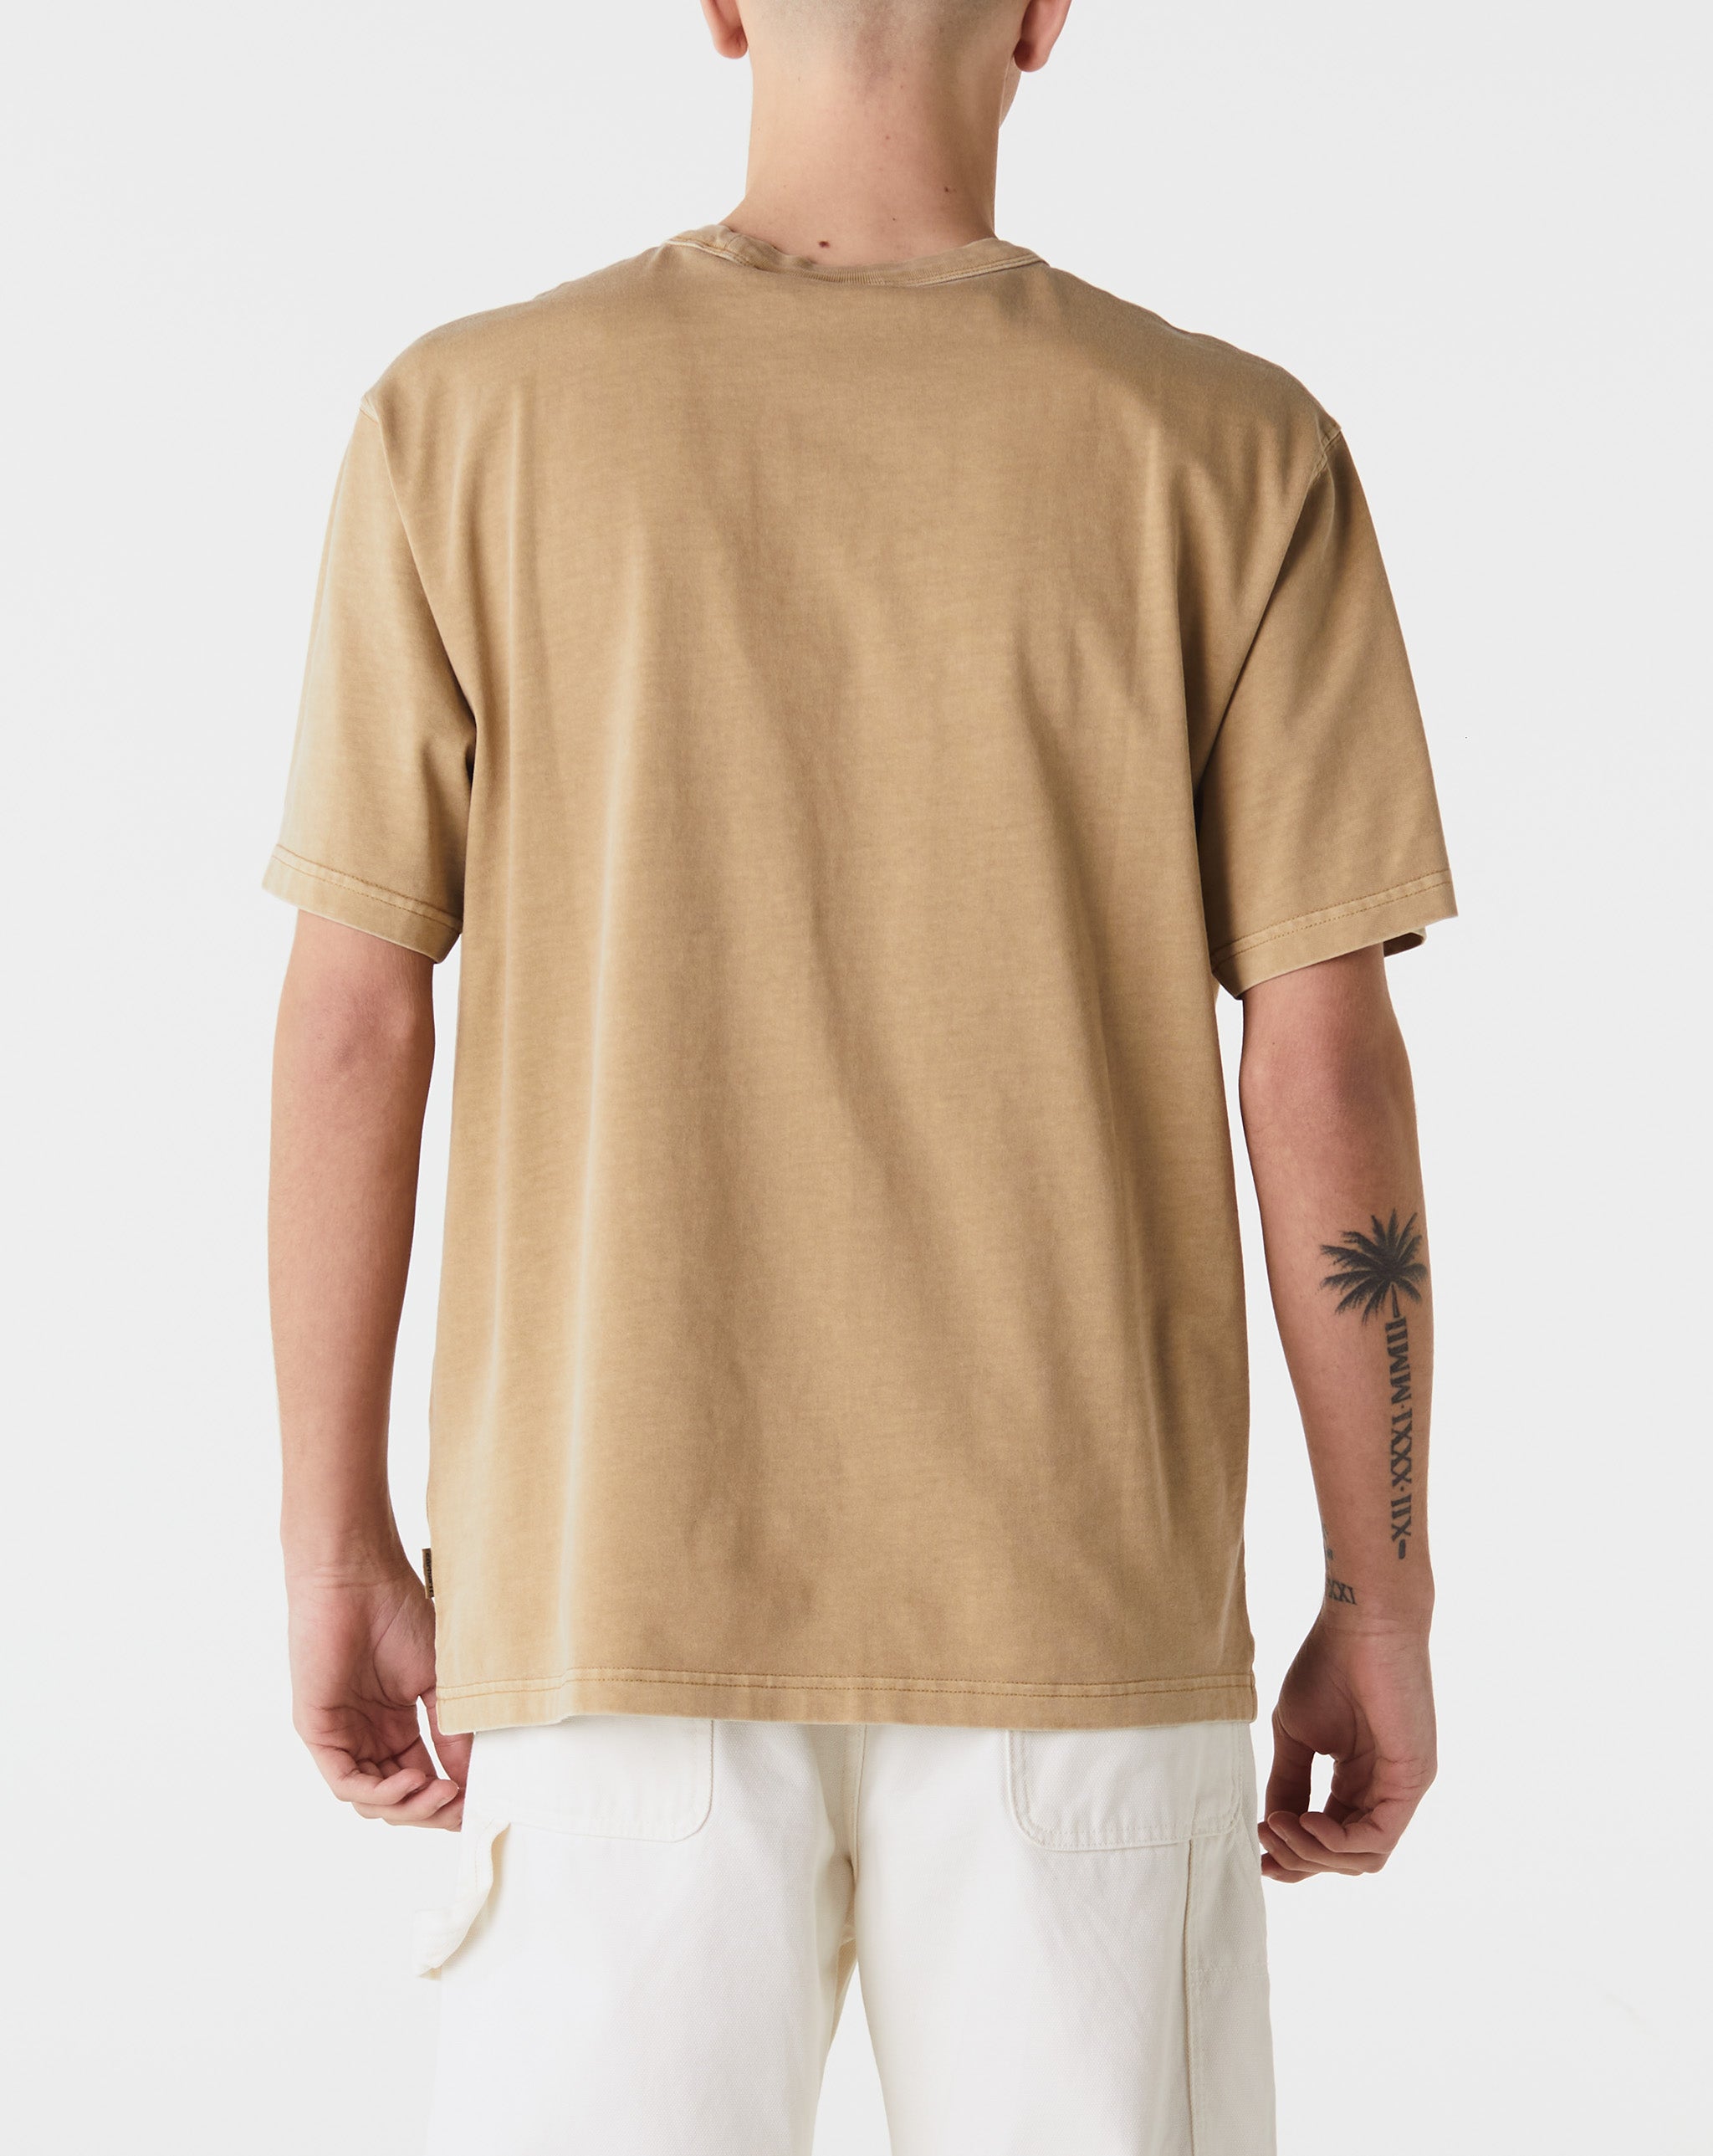 Carhartt WIP Taos T-Shirt  - Cheap 127-0 Jordan outlet